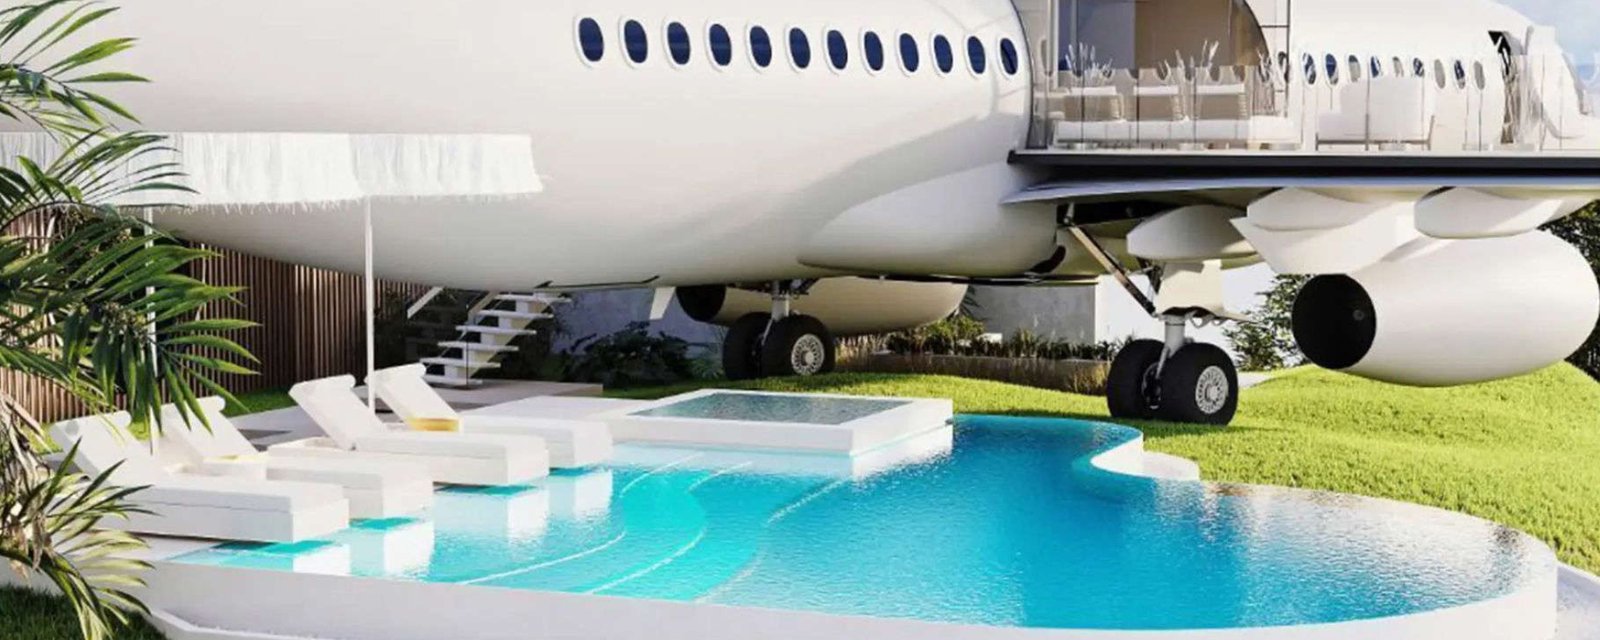 Une villa de luxe dans un Boeing 737? Pourquoi pas!